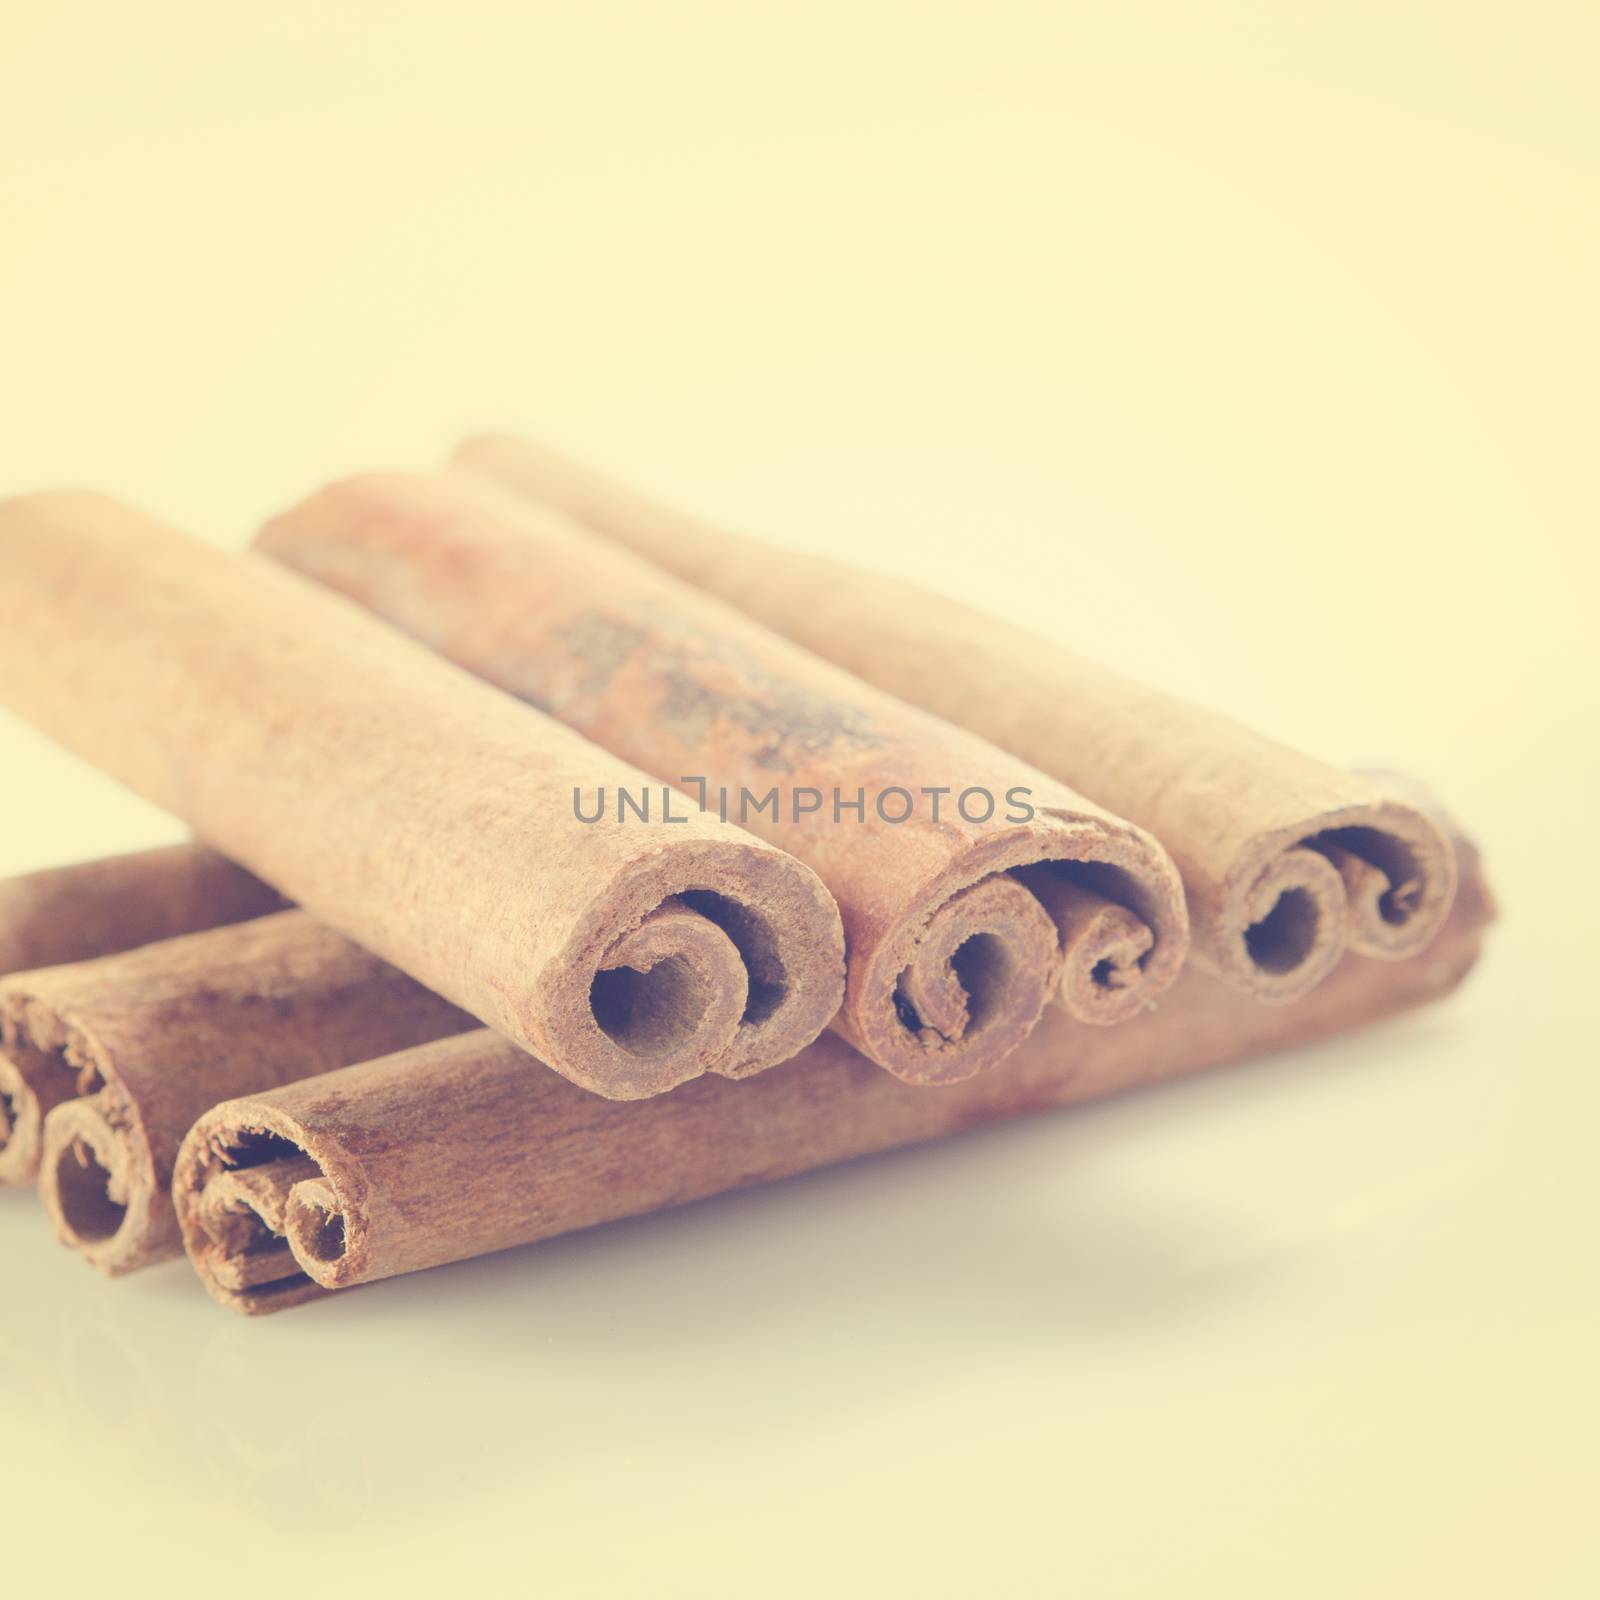 Cinnamon sticks in vintage retro background.